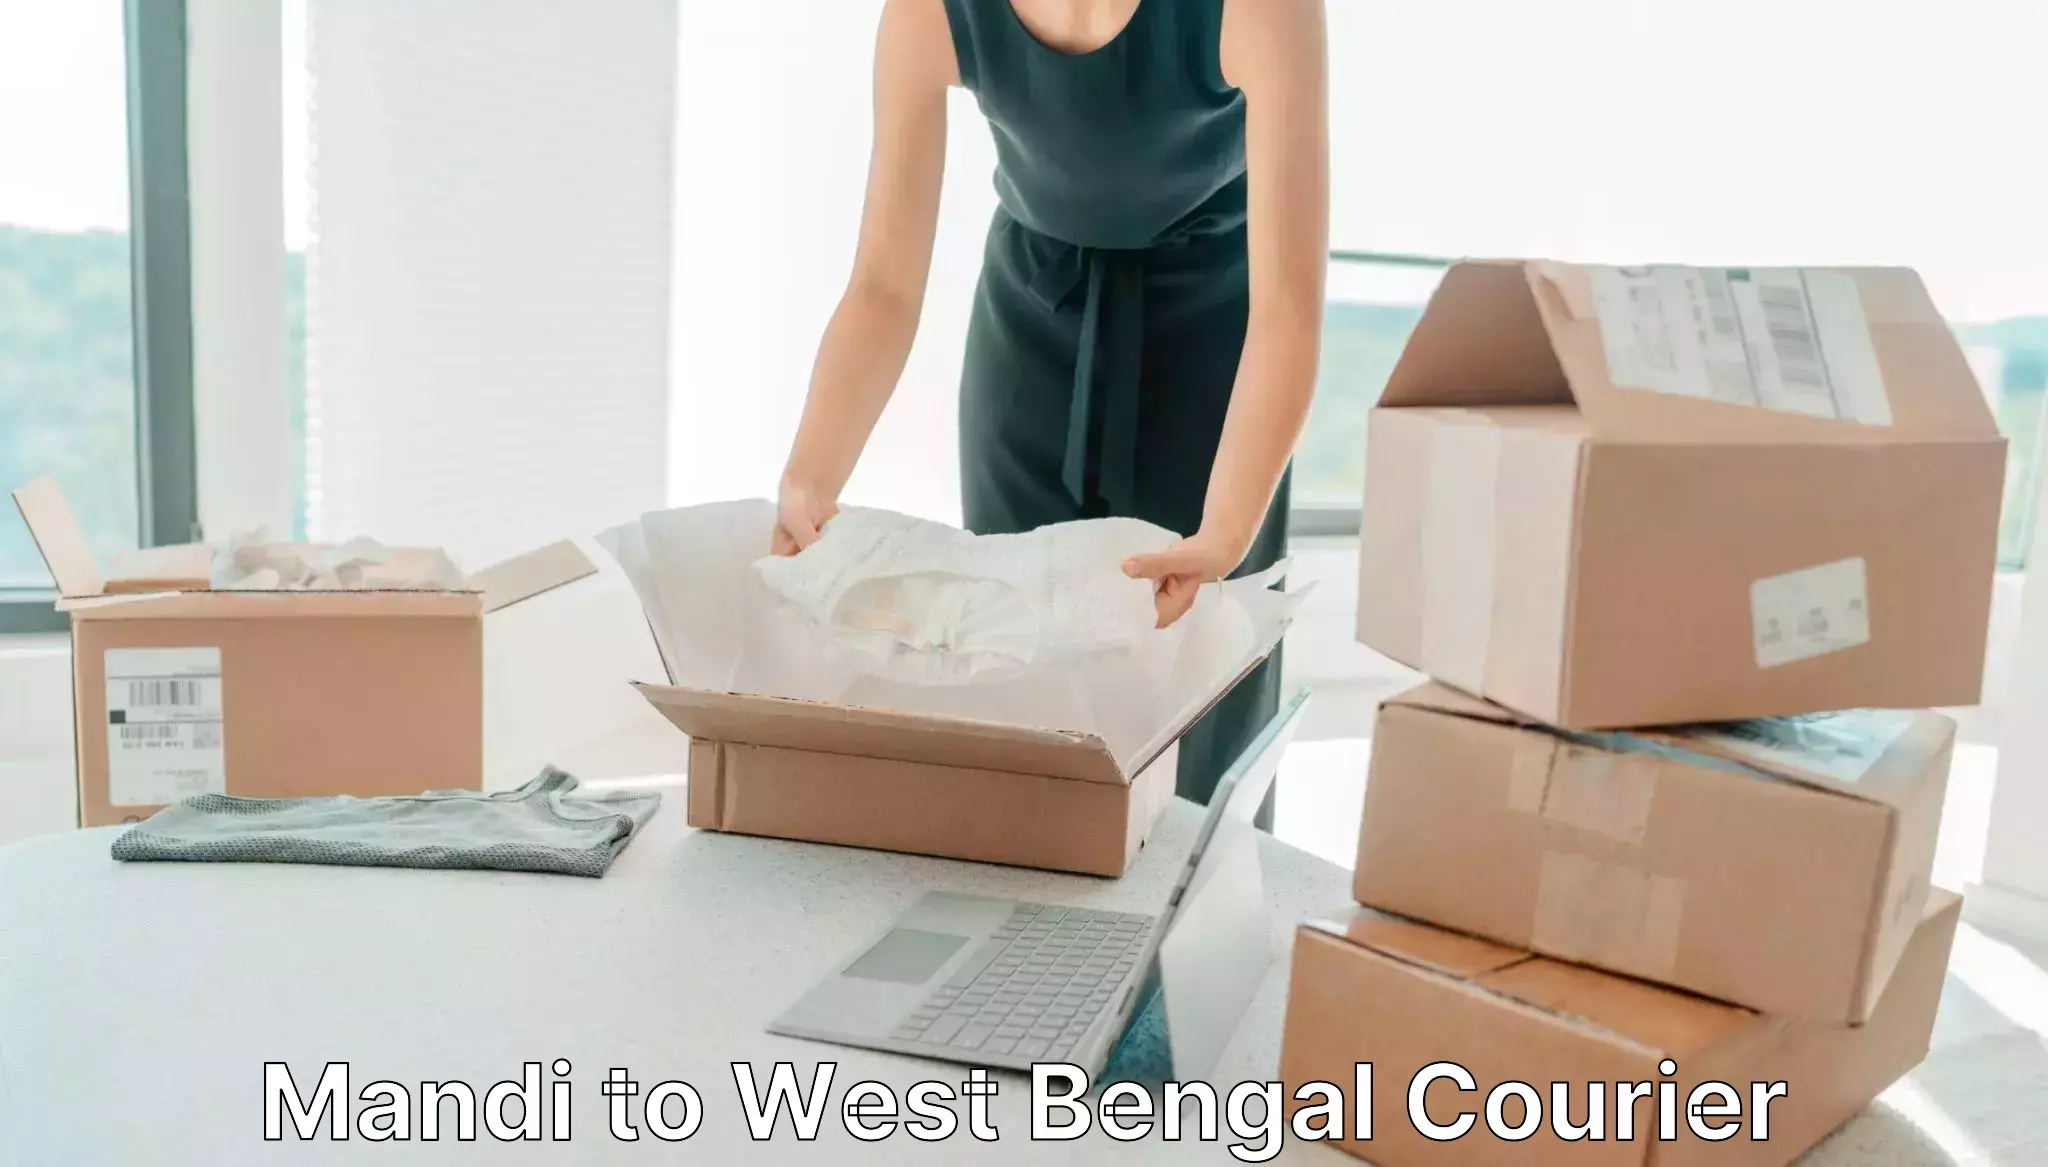 Advanced shipping technology Mandi to West Bengal